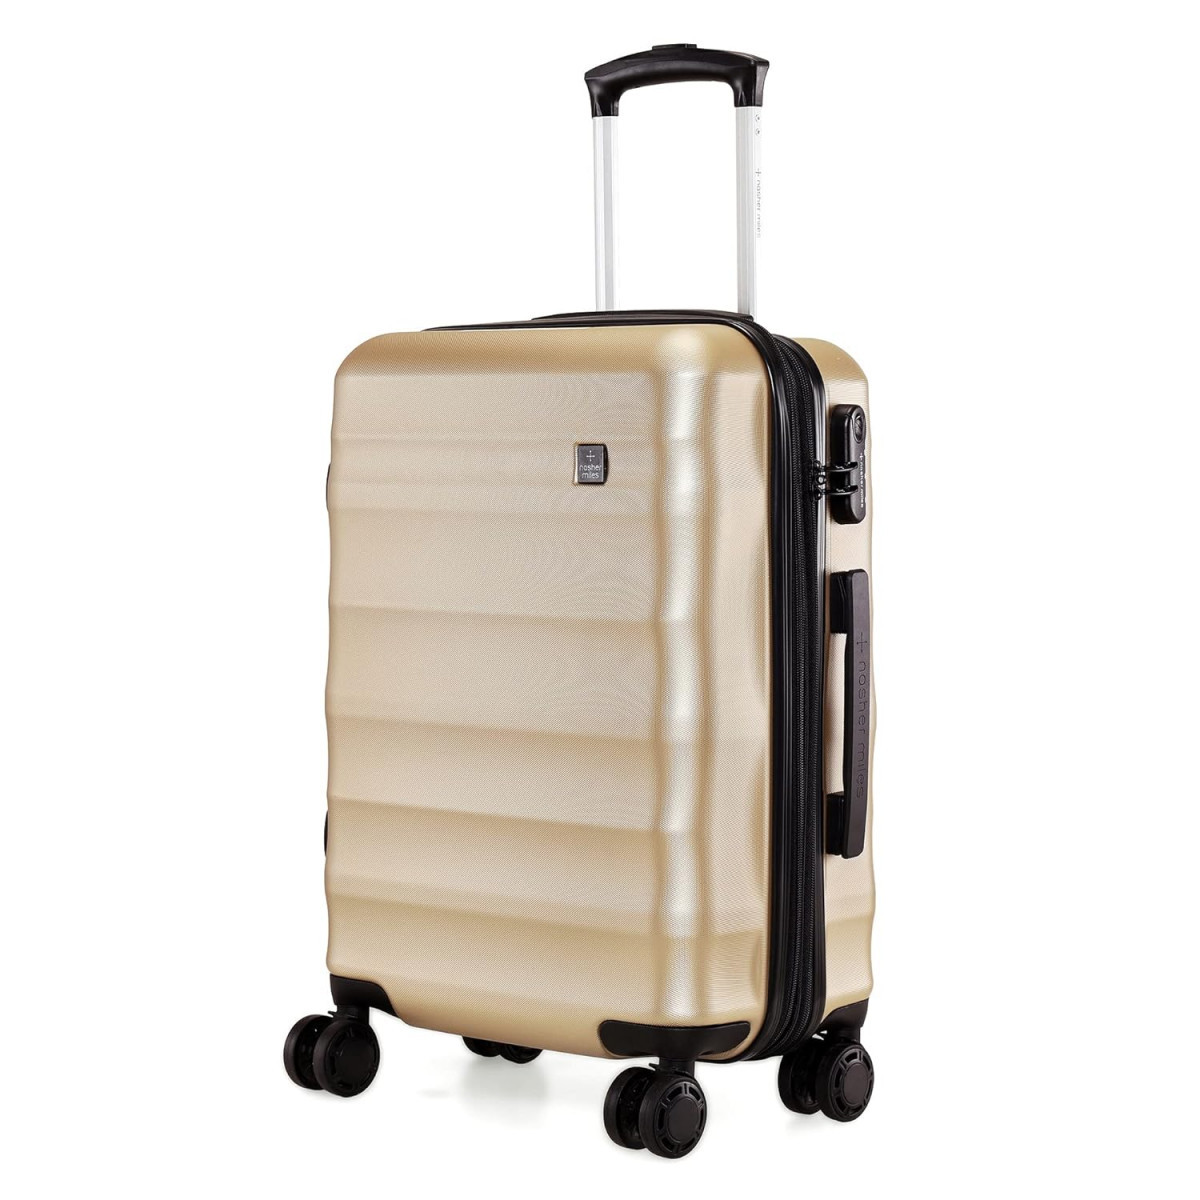 Nasher Miles Rome Expander Hard Side Cabin Luggage Bronze 20 Inch55CM TrolleyTravelTourist Bag